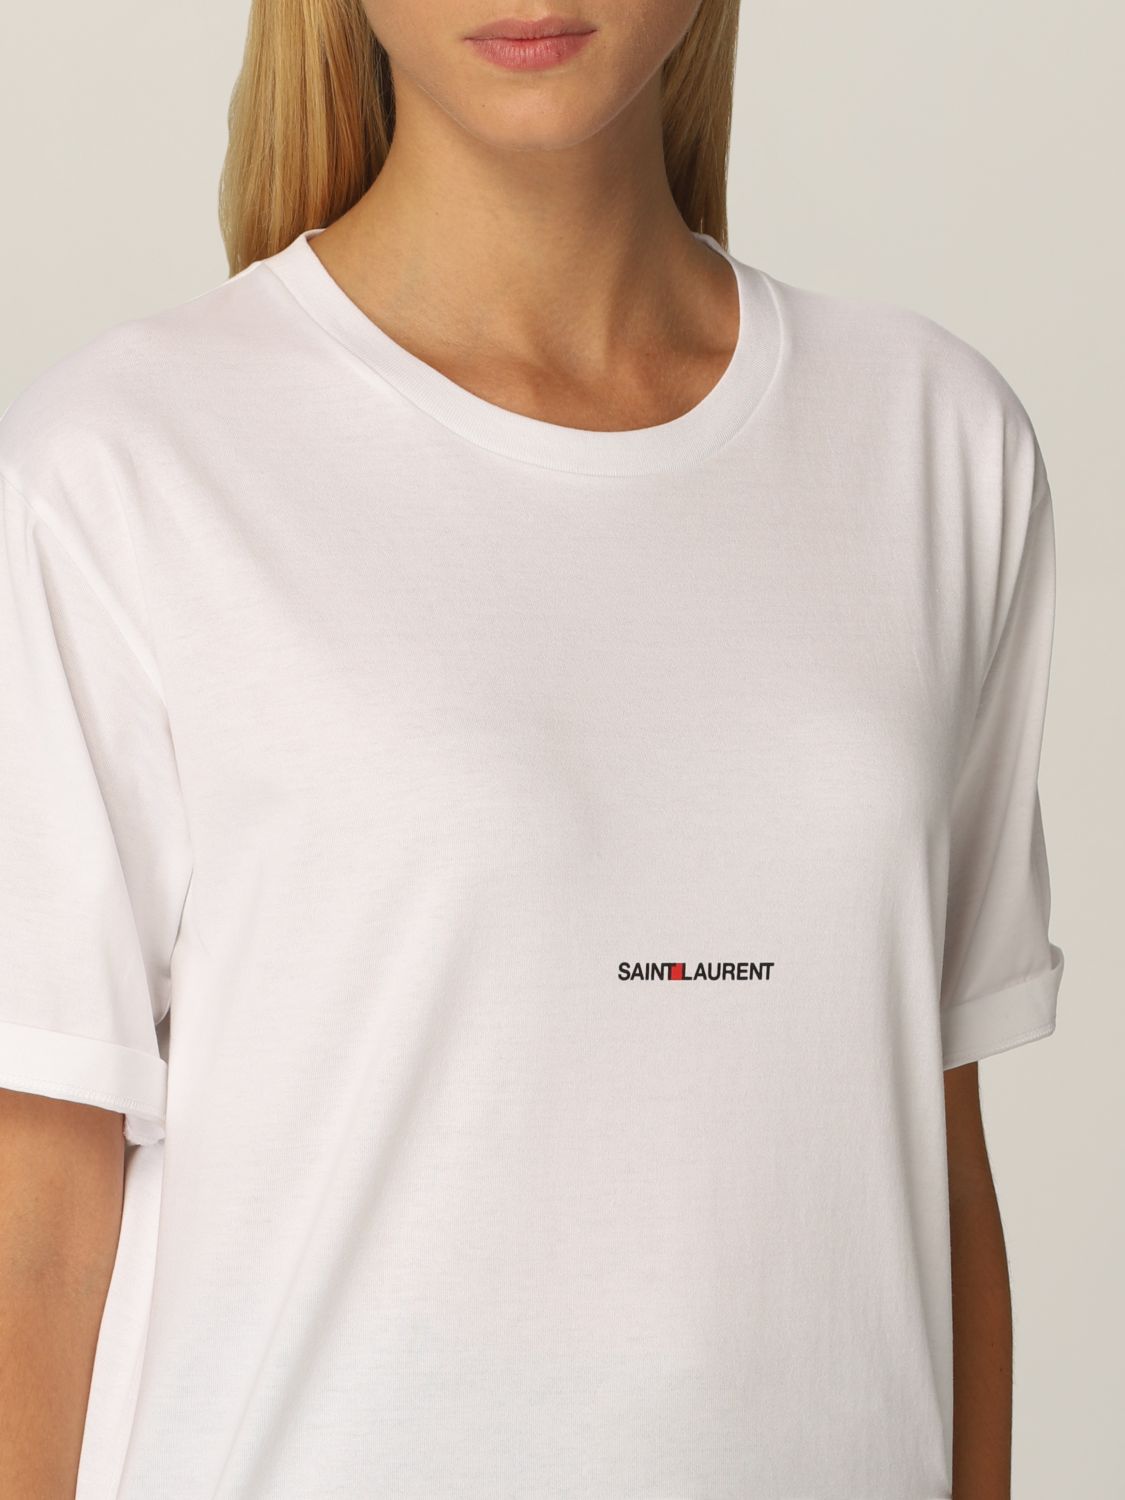 Camiseta Saint Laurent: Camiseta mujer Saint Laurent blanco 5